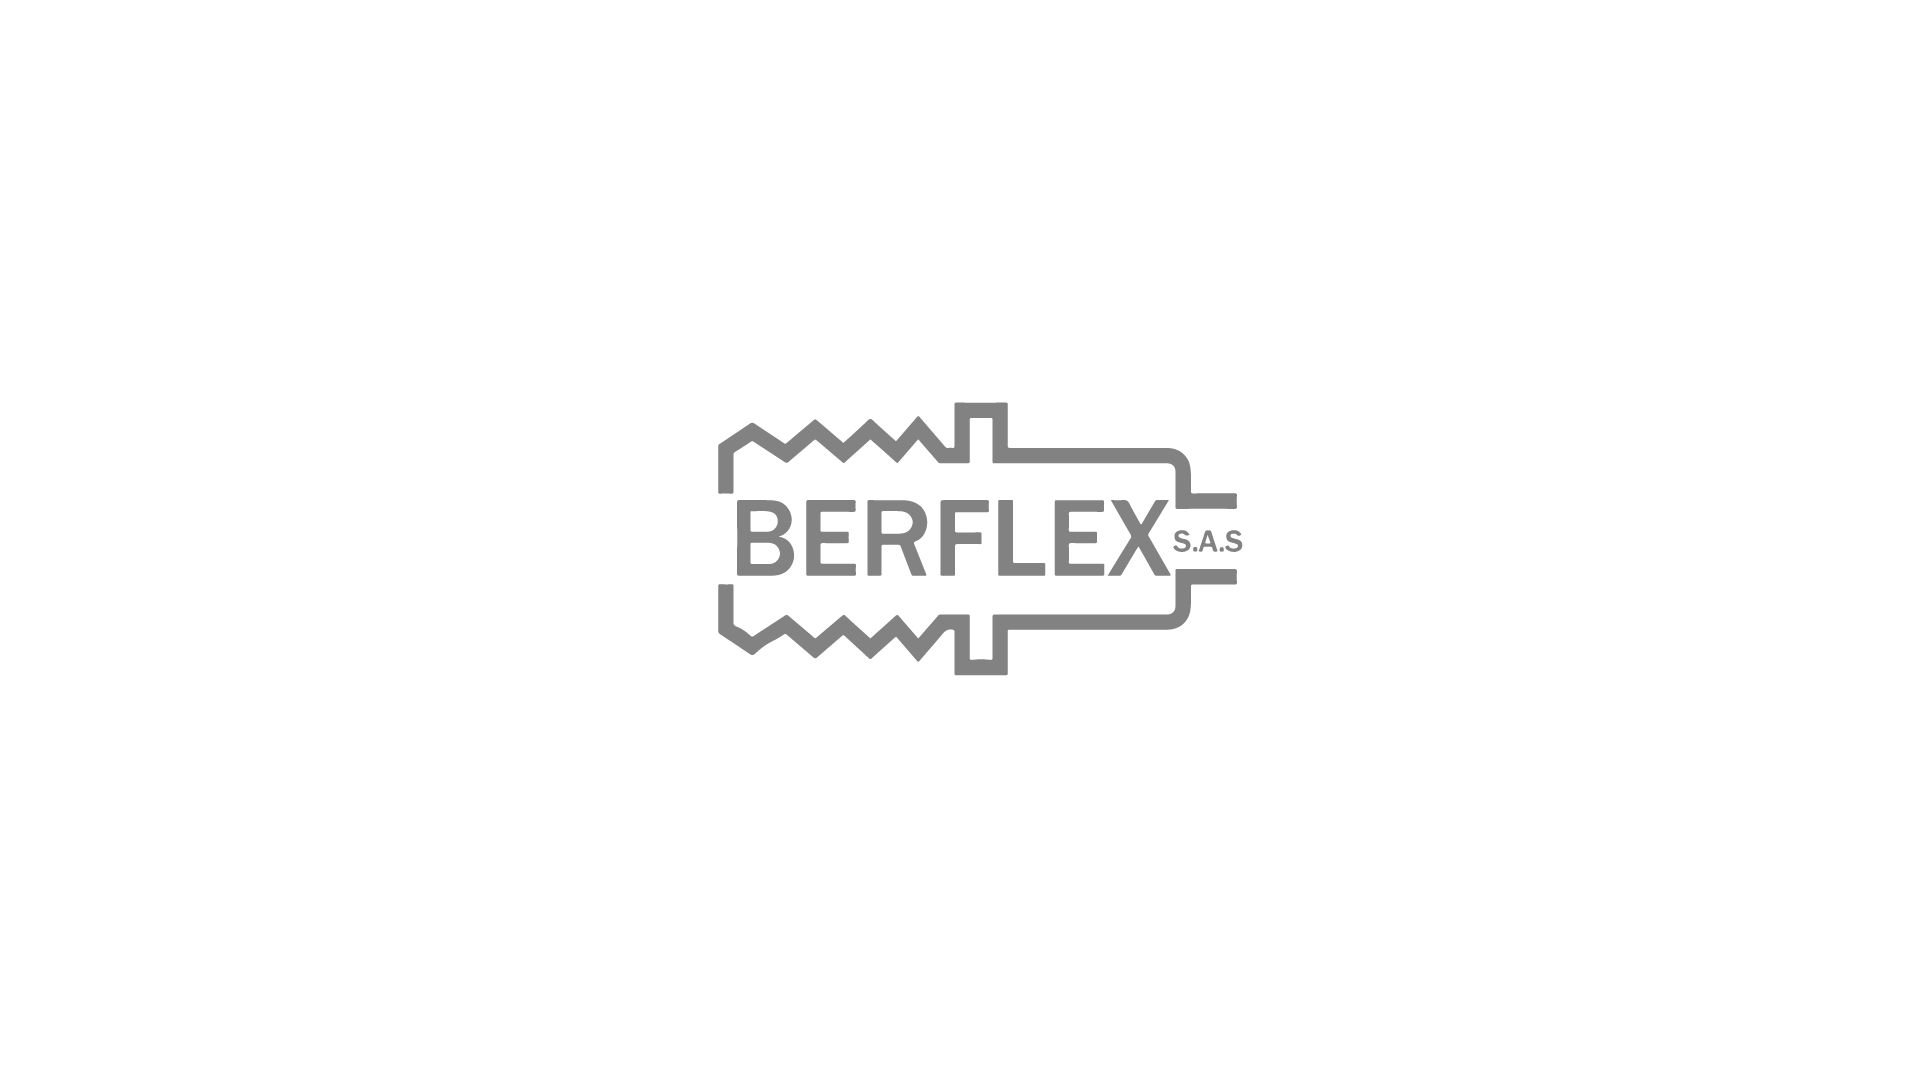 Berflex